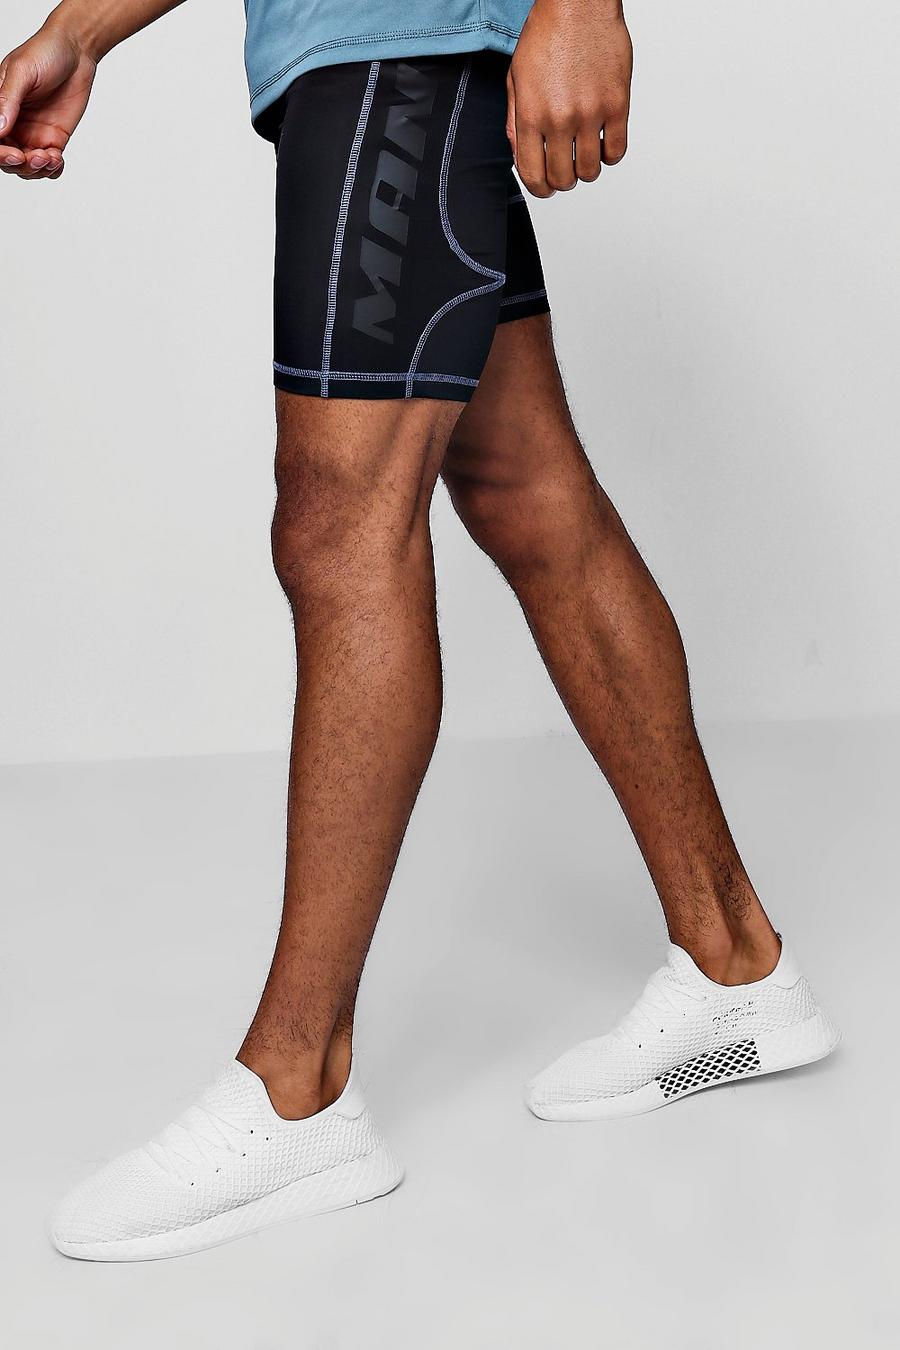 Pantalones cortos de compresión Active Gym image number 1